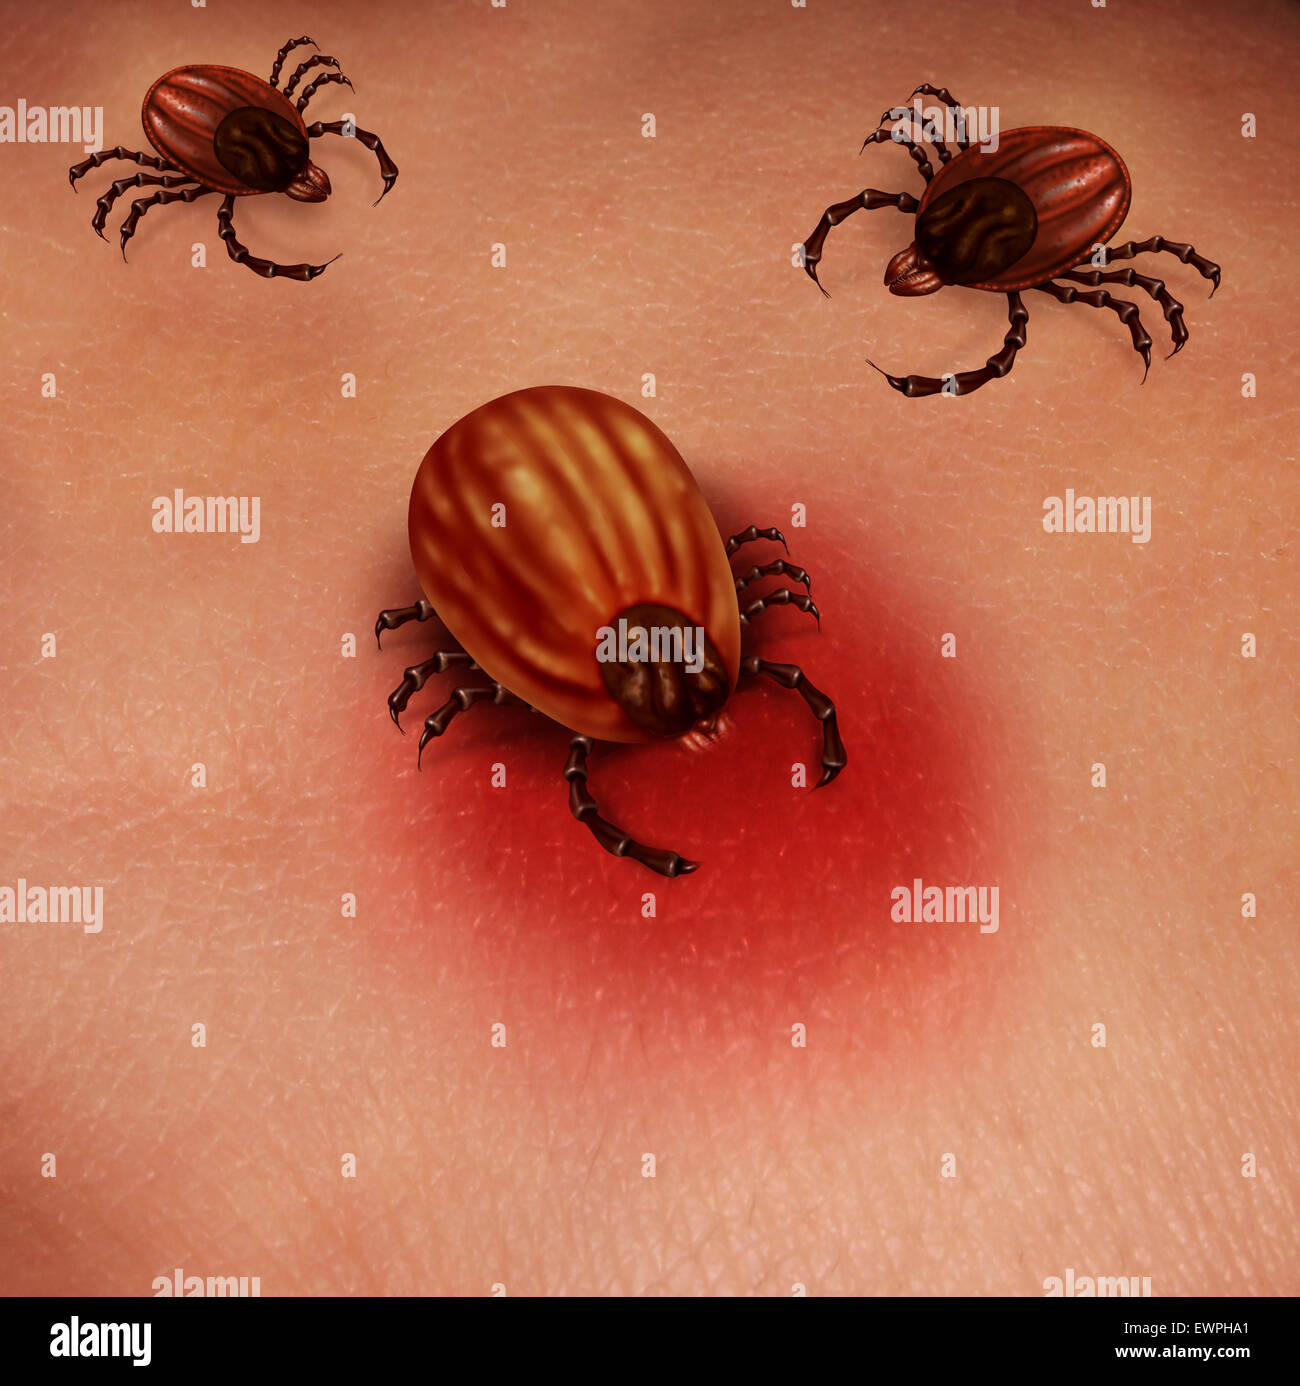 Lyme-Borreliose menschlichen Tick Konzept als ein weibliches Insekt Fütterung für Blut auf der Haut eines menschlichen Wirtes als Gesundheitswesen Problem für bakterielle Infektionen und Gefahren einer Infektion von Zecken in der Natur gefunden. Stockfoto